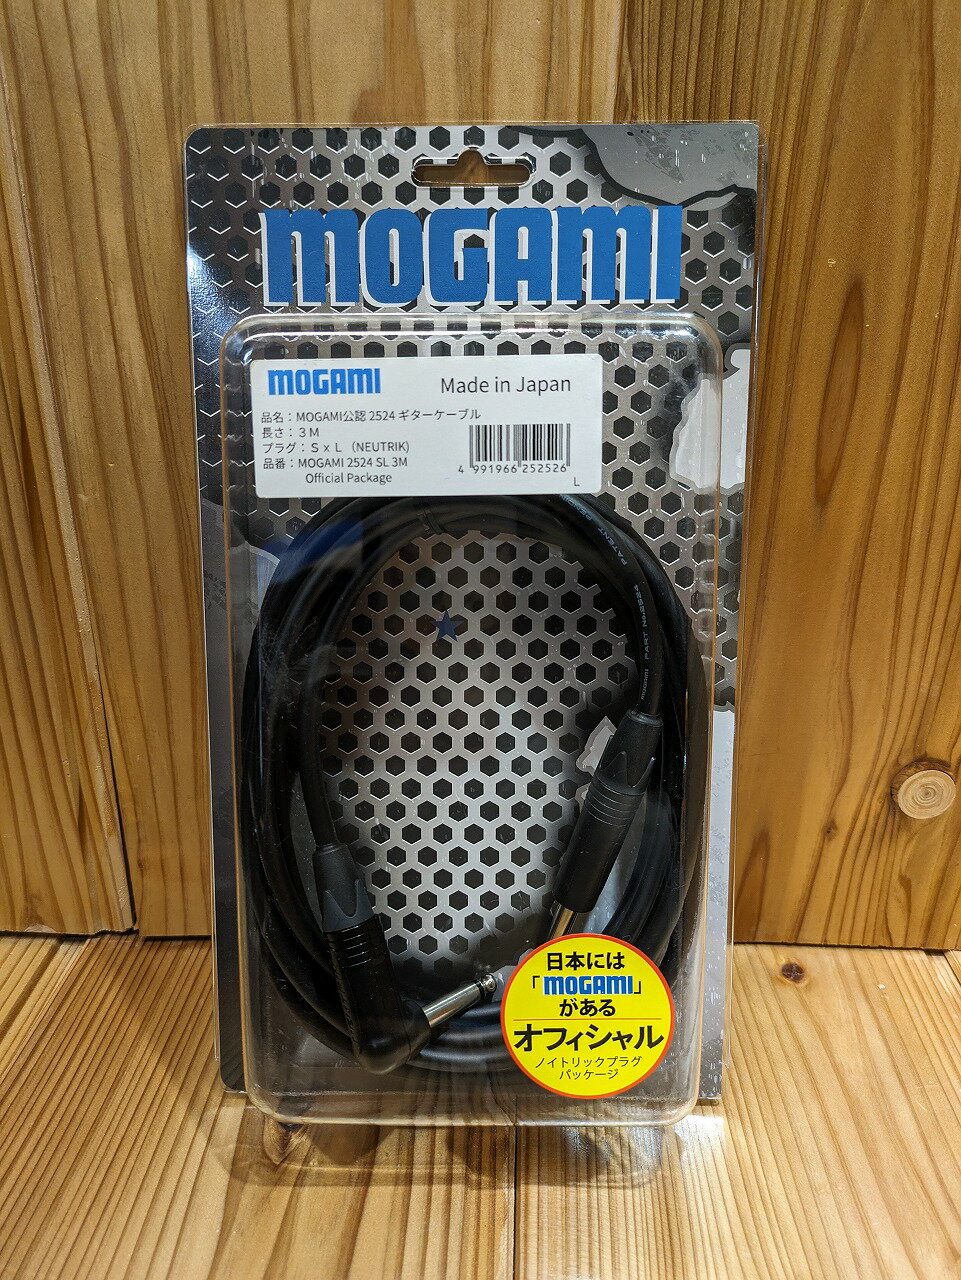 MOGAMI 2524 3m S/L モガミ シールドケーブル【横浜店在庫品】